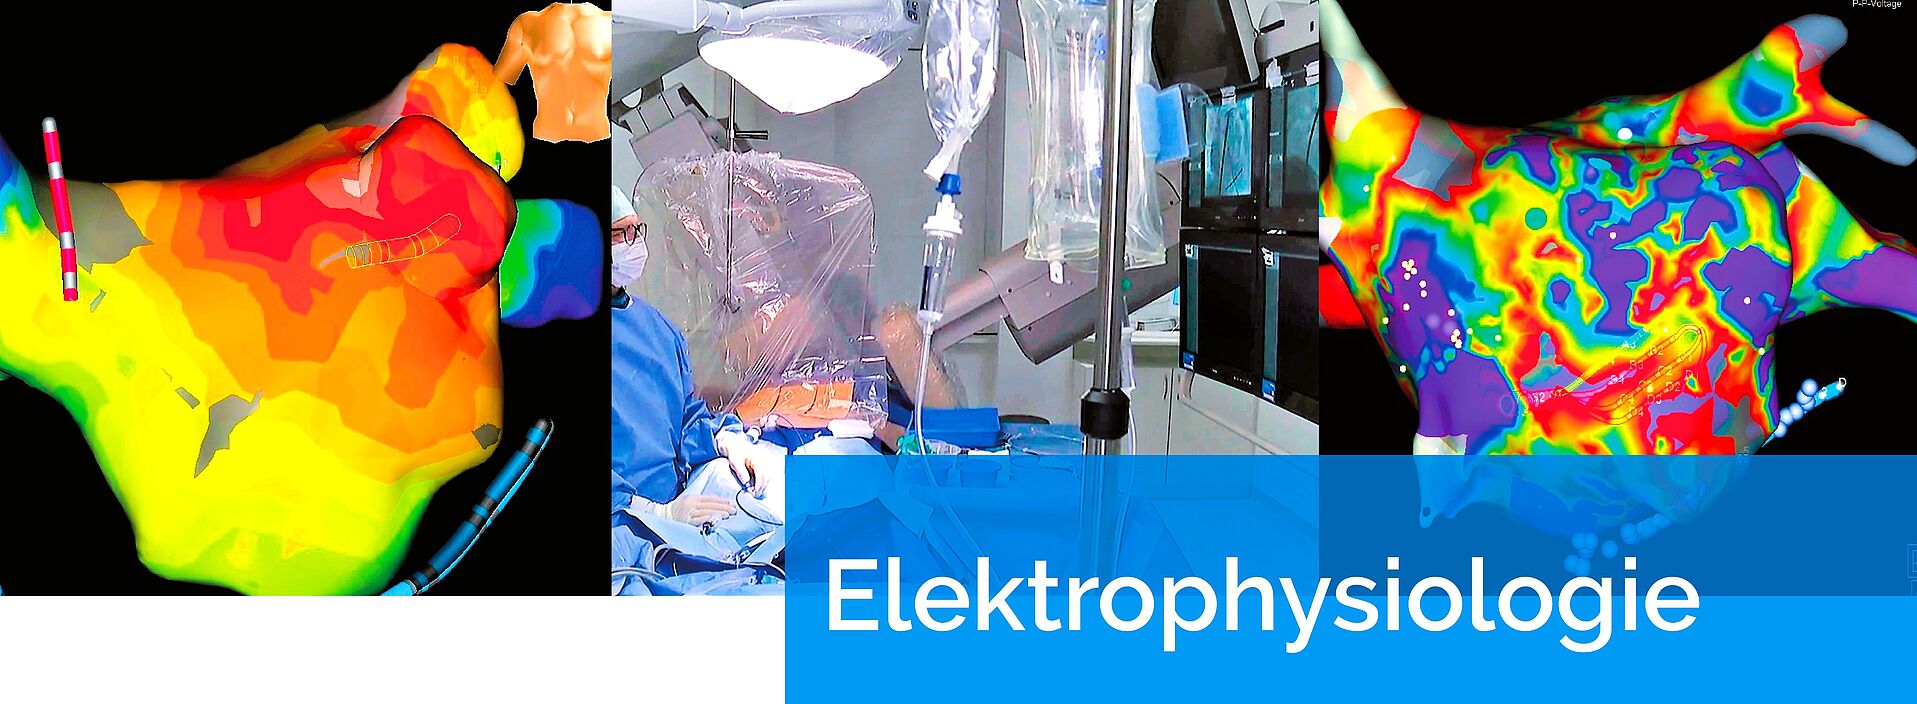 Elektrophysiologische Abteilung an der Kerckhoff-Klinik